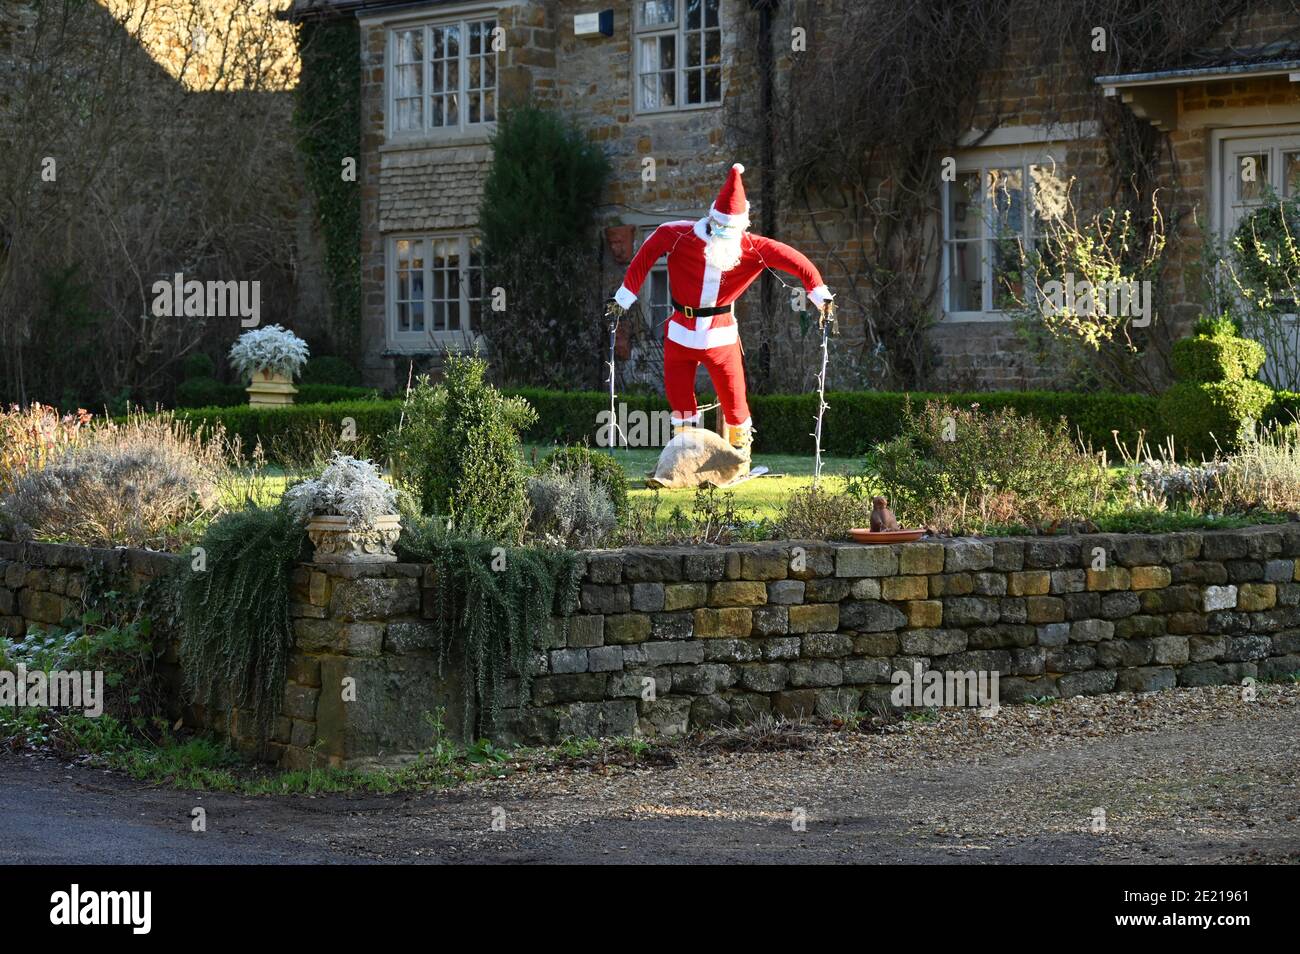 Hausgemachter Weihnachtsmann auf Skiern, eine lustige Dekoration in einem Garten im nördlichen Oxfordshire Dorf Hook Norton während der Weihnachtszeit Stockfoto